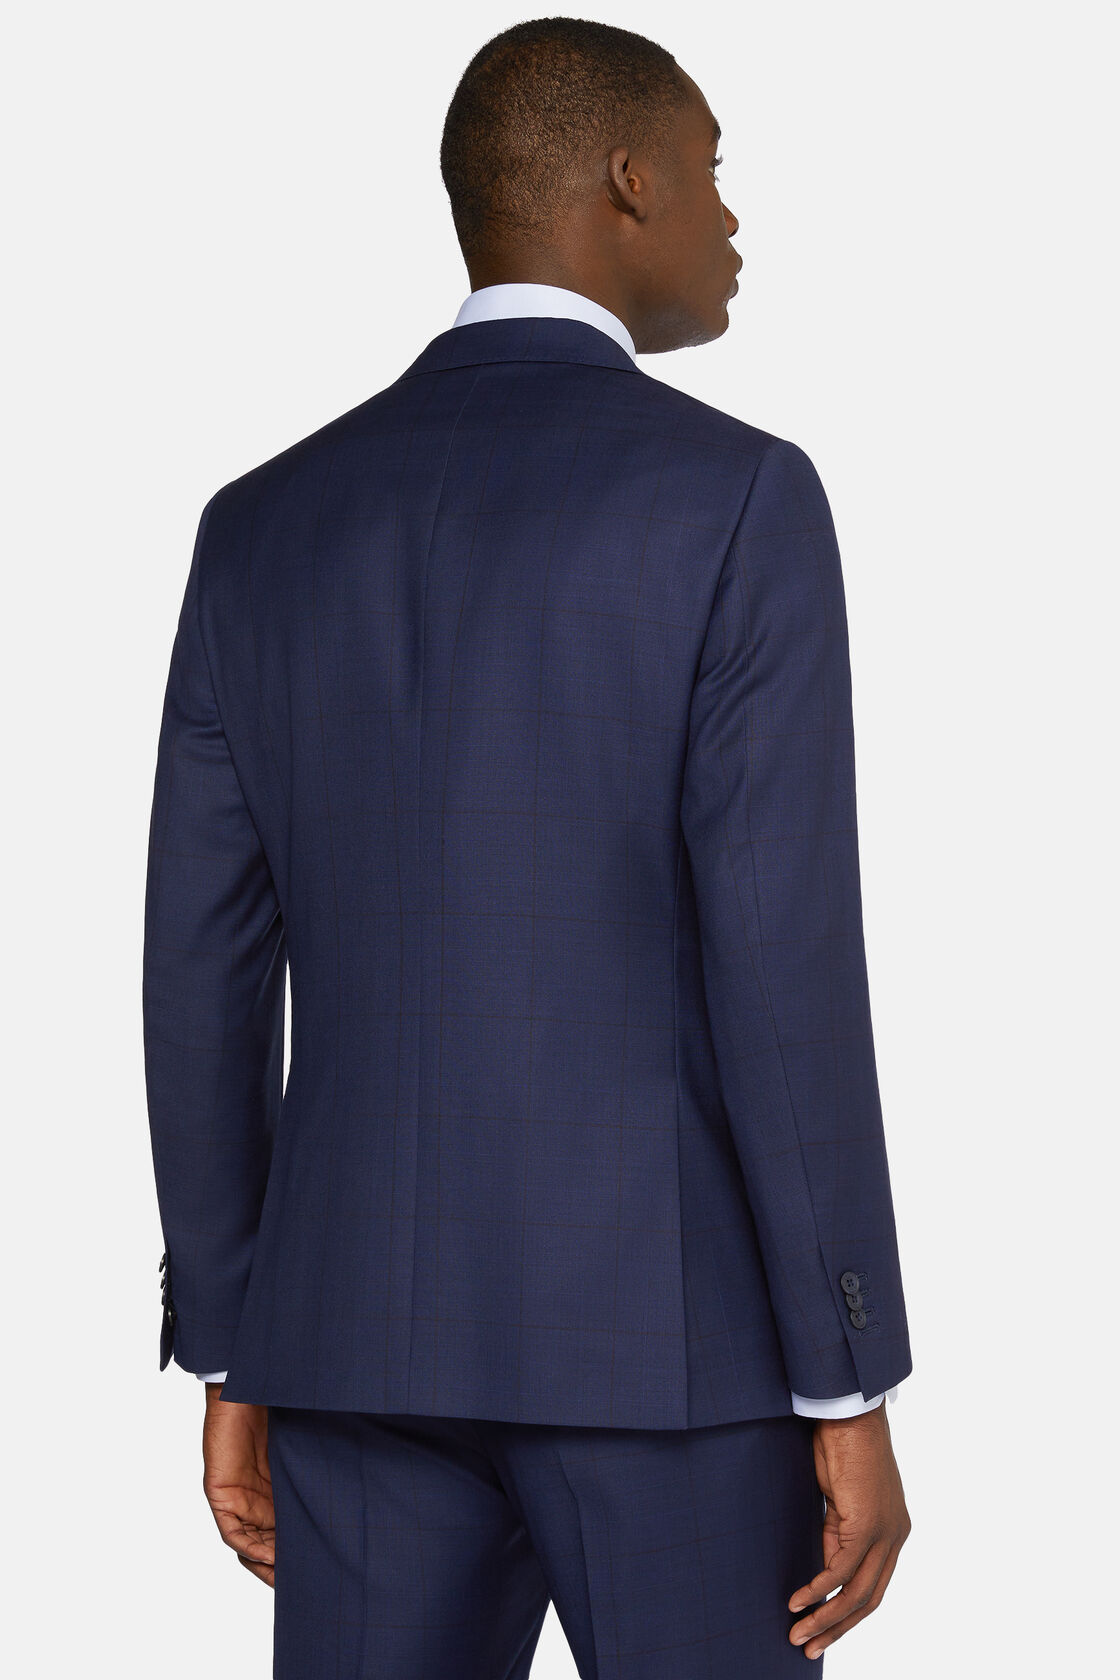 Granatowy garnitur w kratę księcia Walii z czystej wełny, Navy blue, hi-res